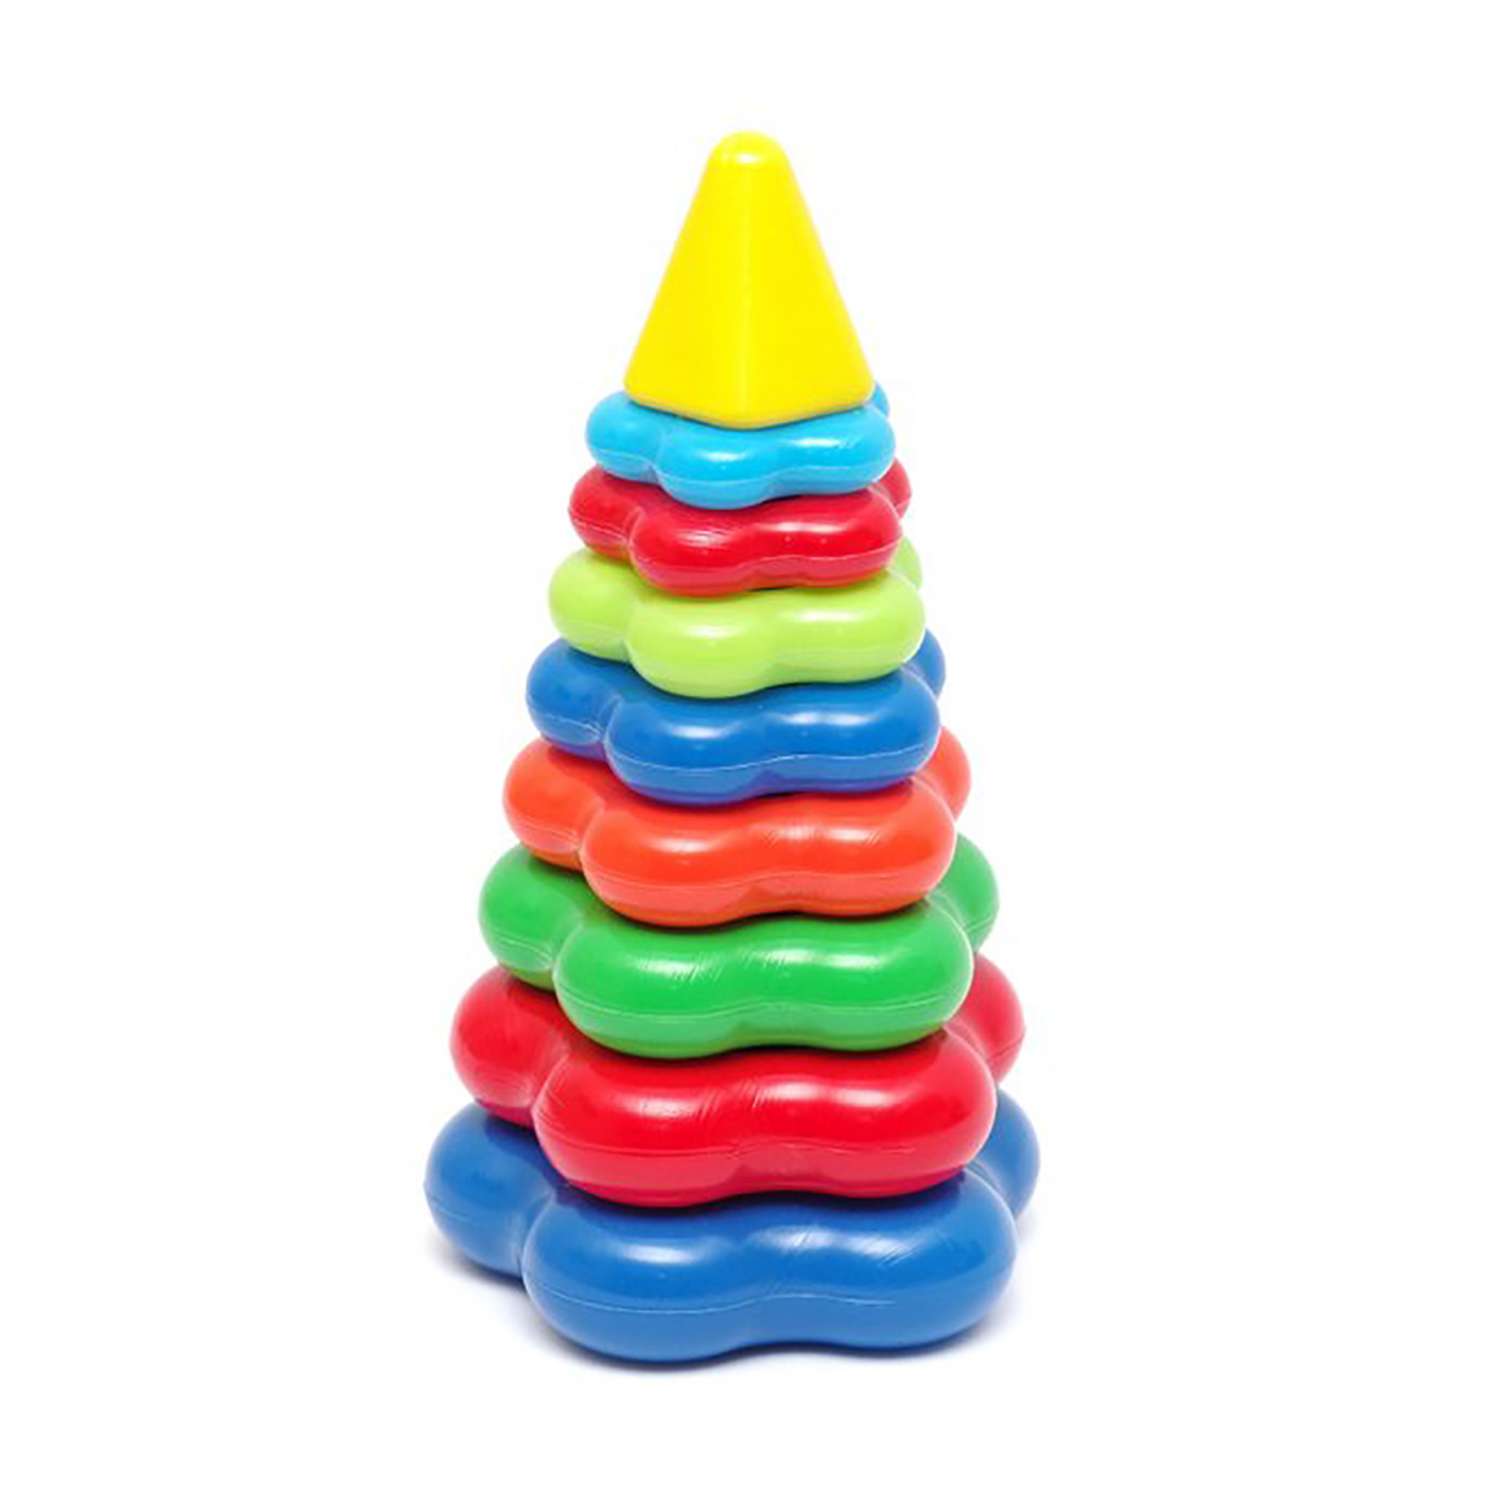 Пирамидка Karolina toys 26 см пластмассовая - фото 1